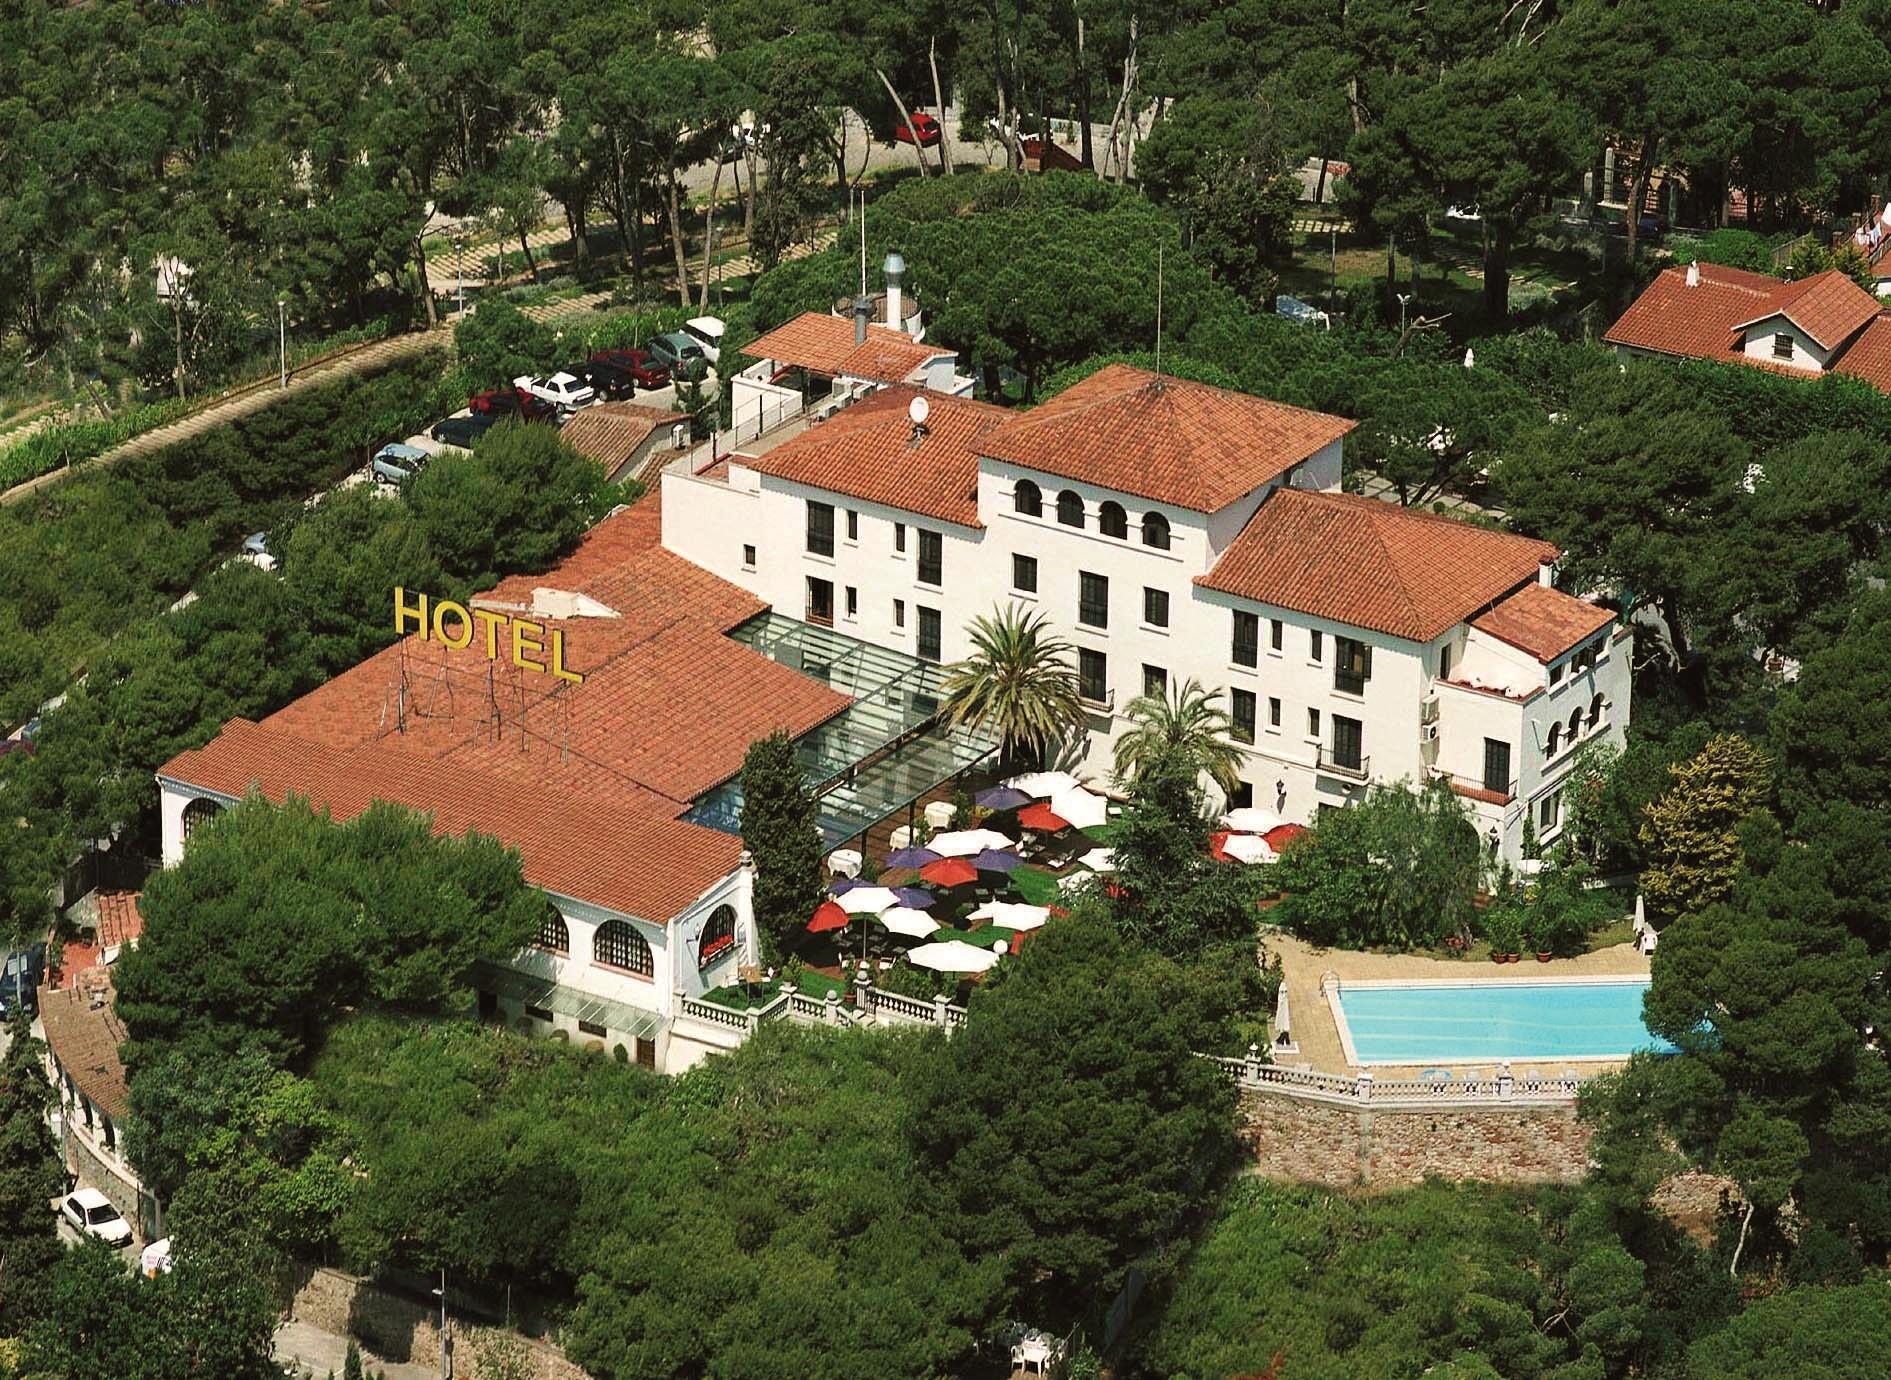 Hotel EL CASTELL de Sant Boi image